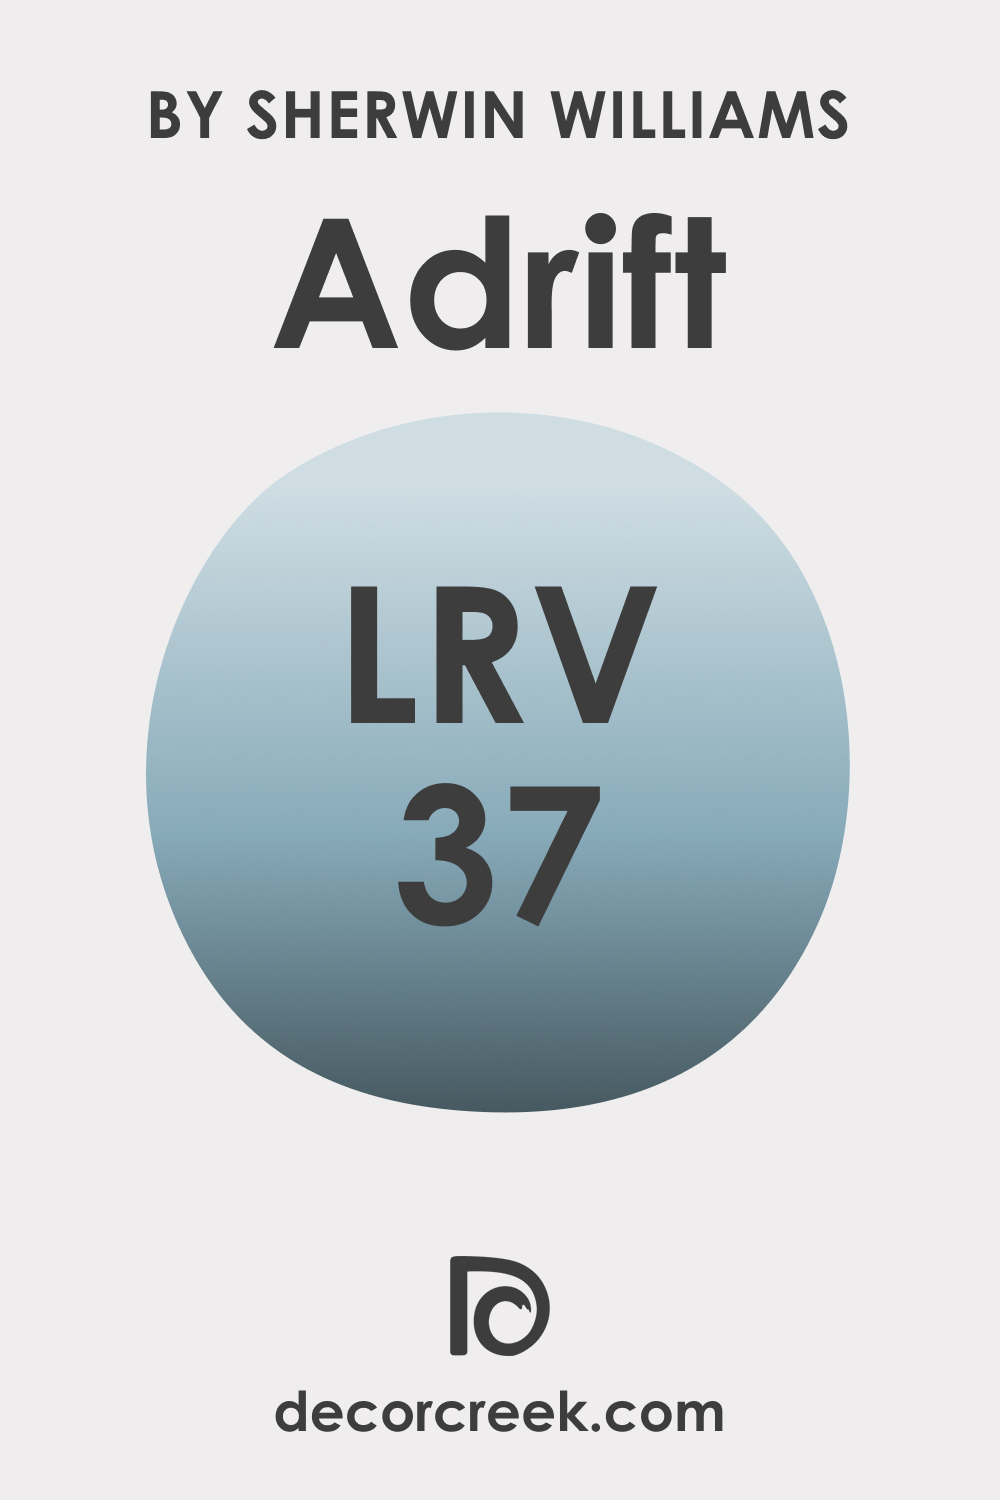 LRV of SW 7608 Adrift